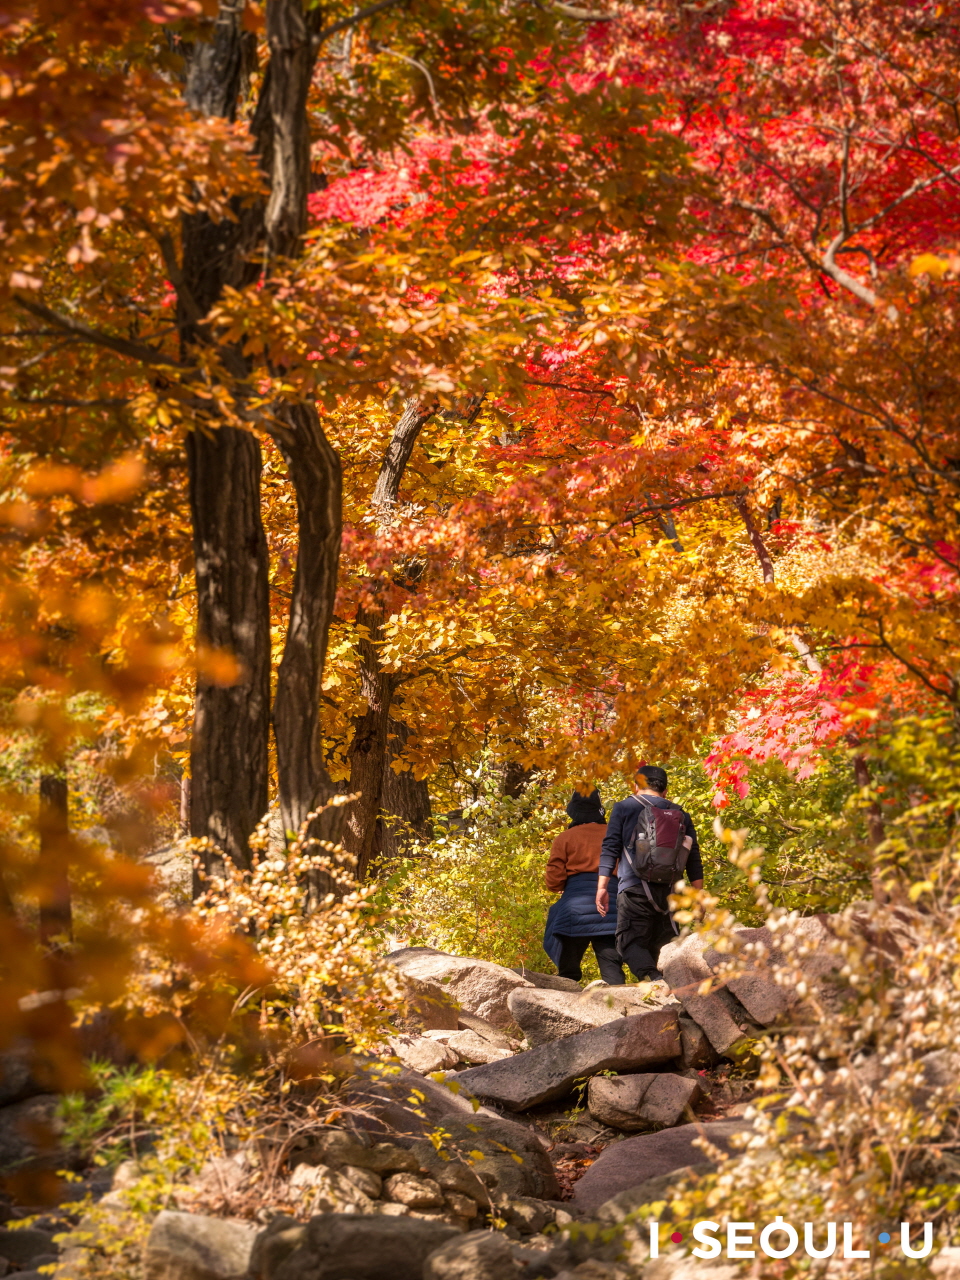 紅葉で色づいた木々の間に続くプッカンサン(北漢山)の散策路を歩く夫婦